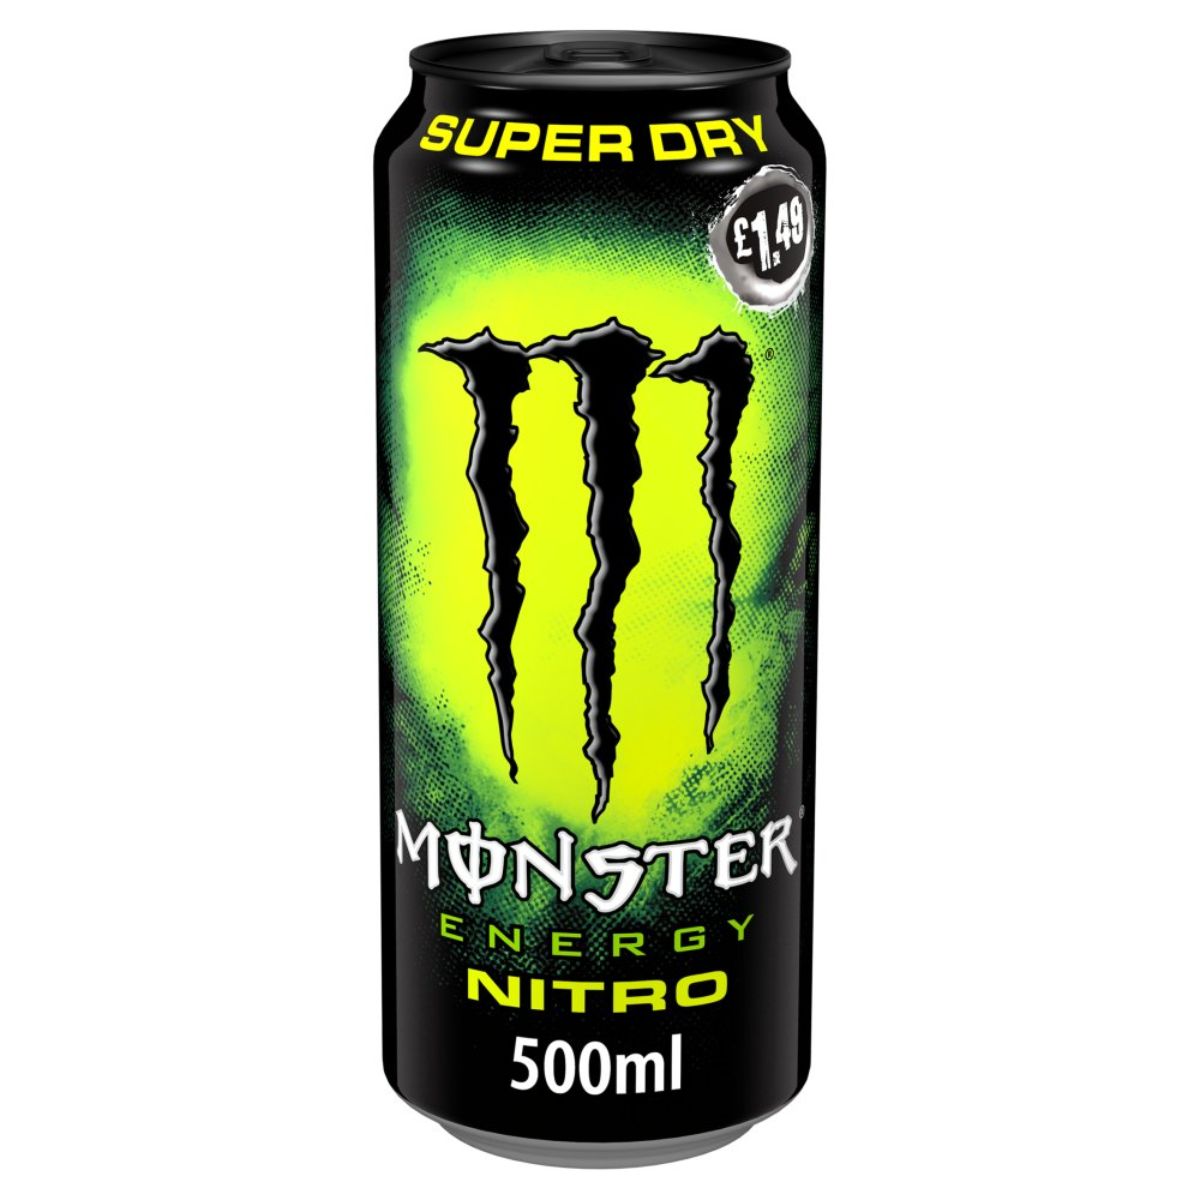 Monster - Nitro Super Dry Energy Drink - 500ml